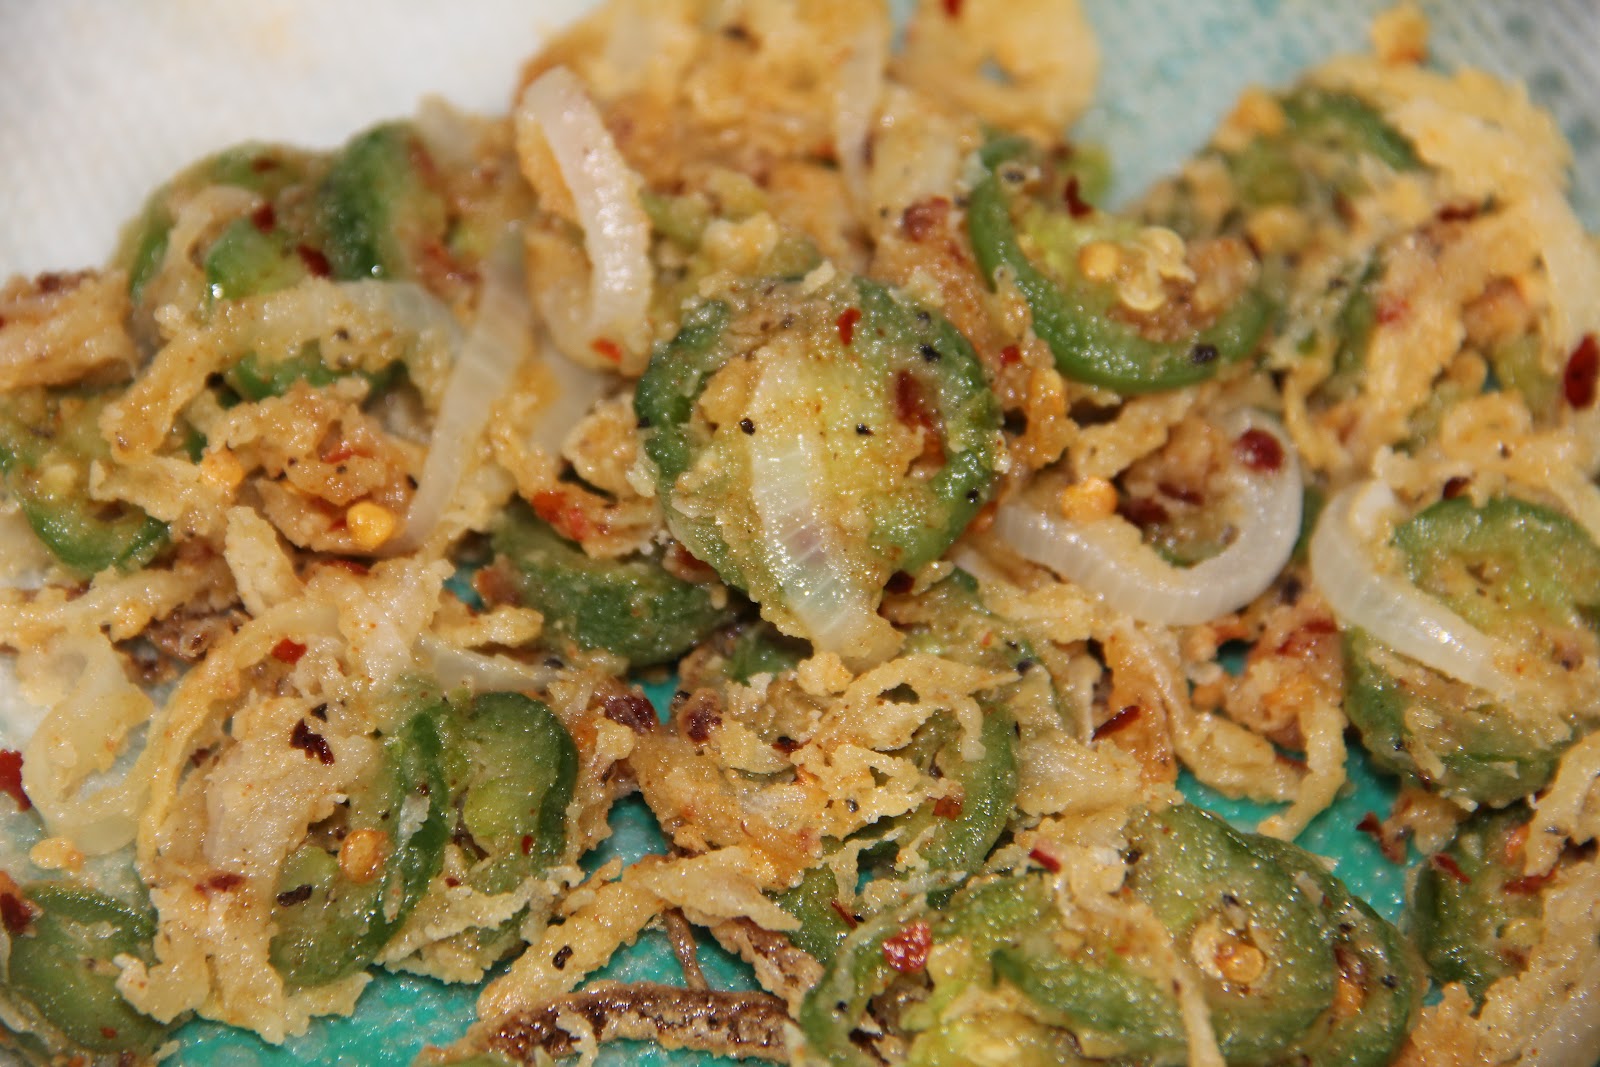 Priya's Food Blog: Fried Onion and Jalapeno